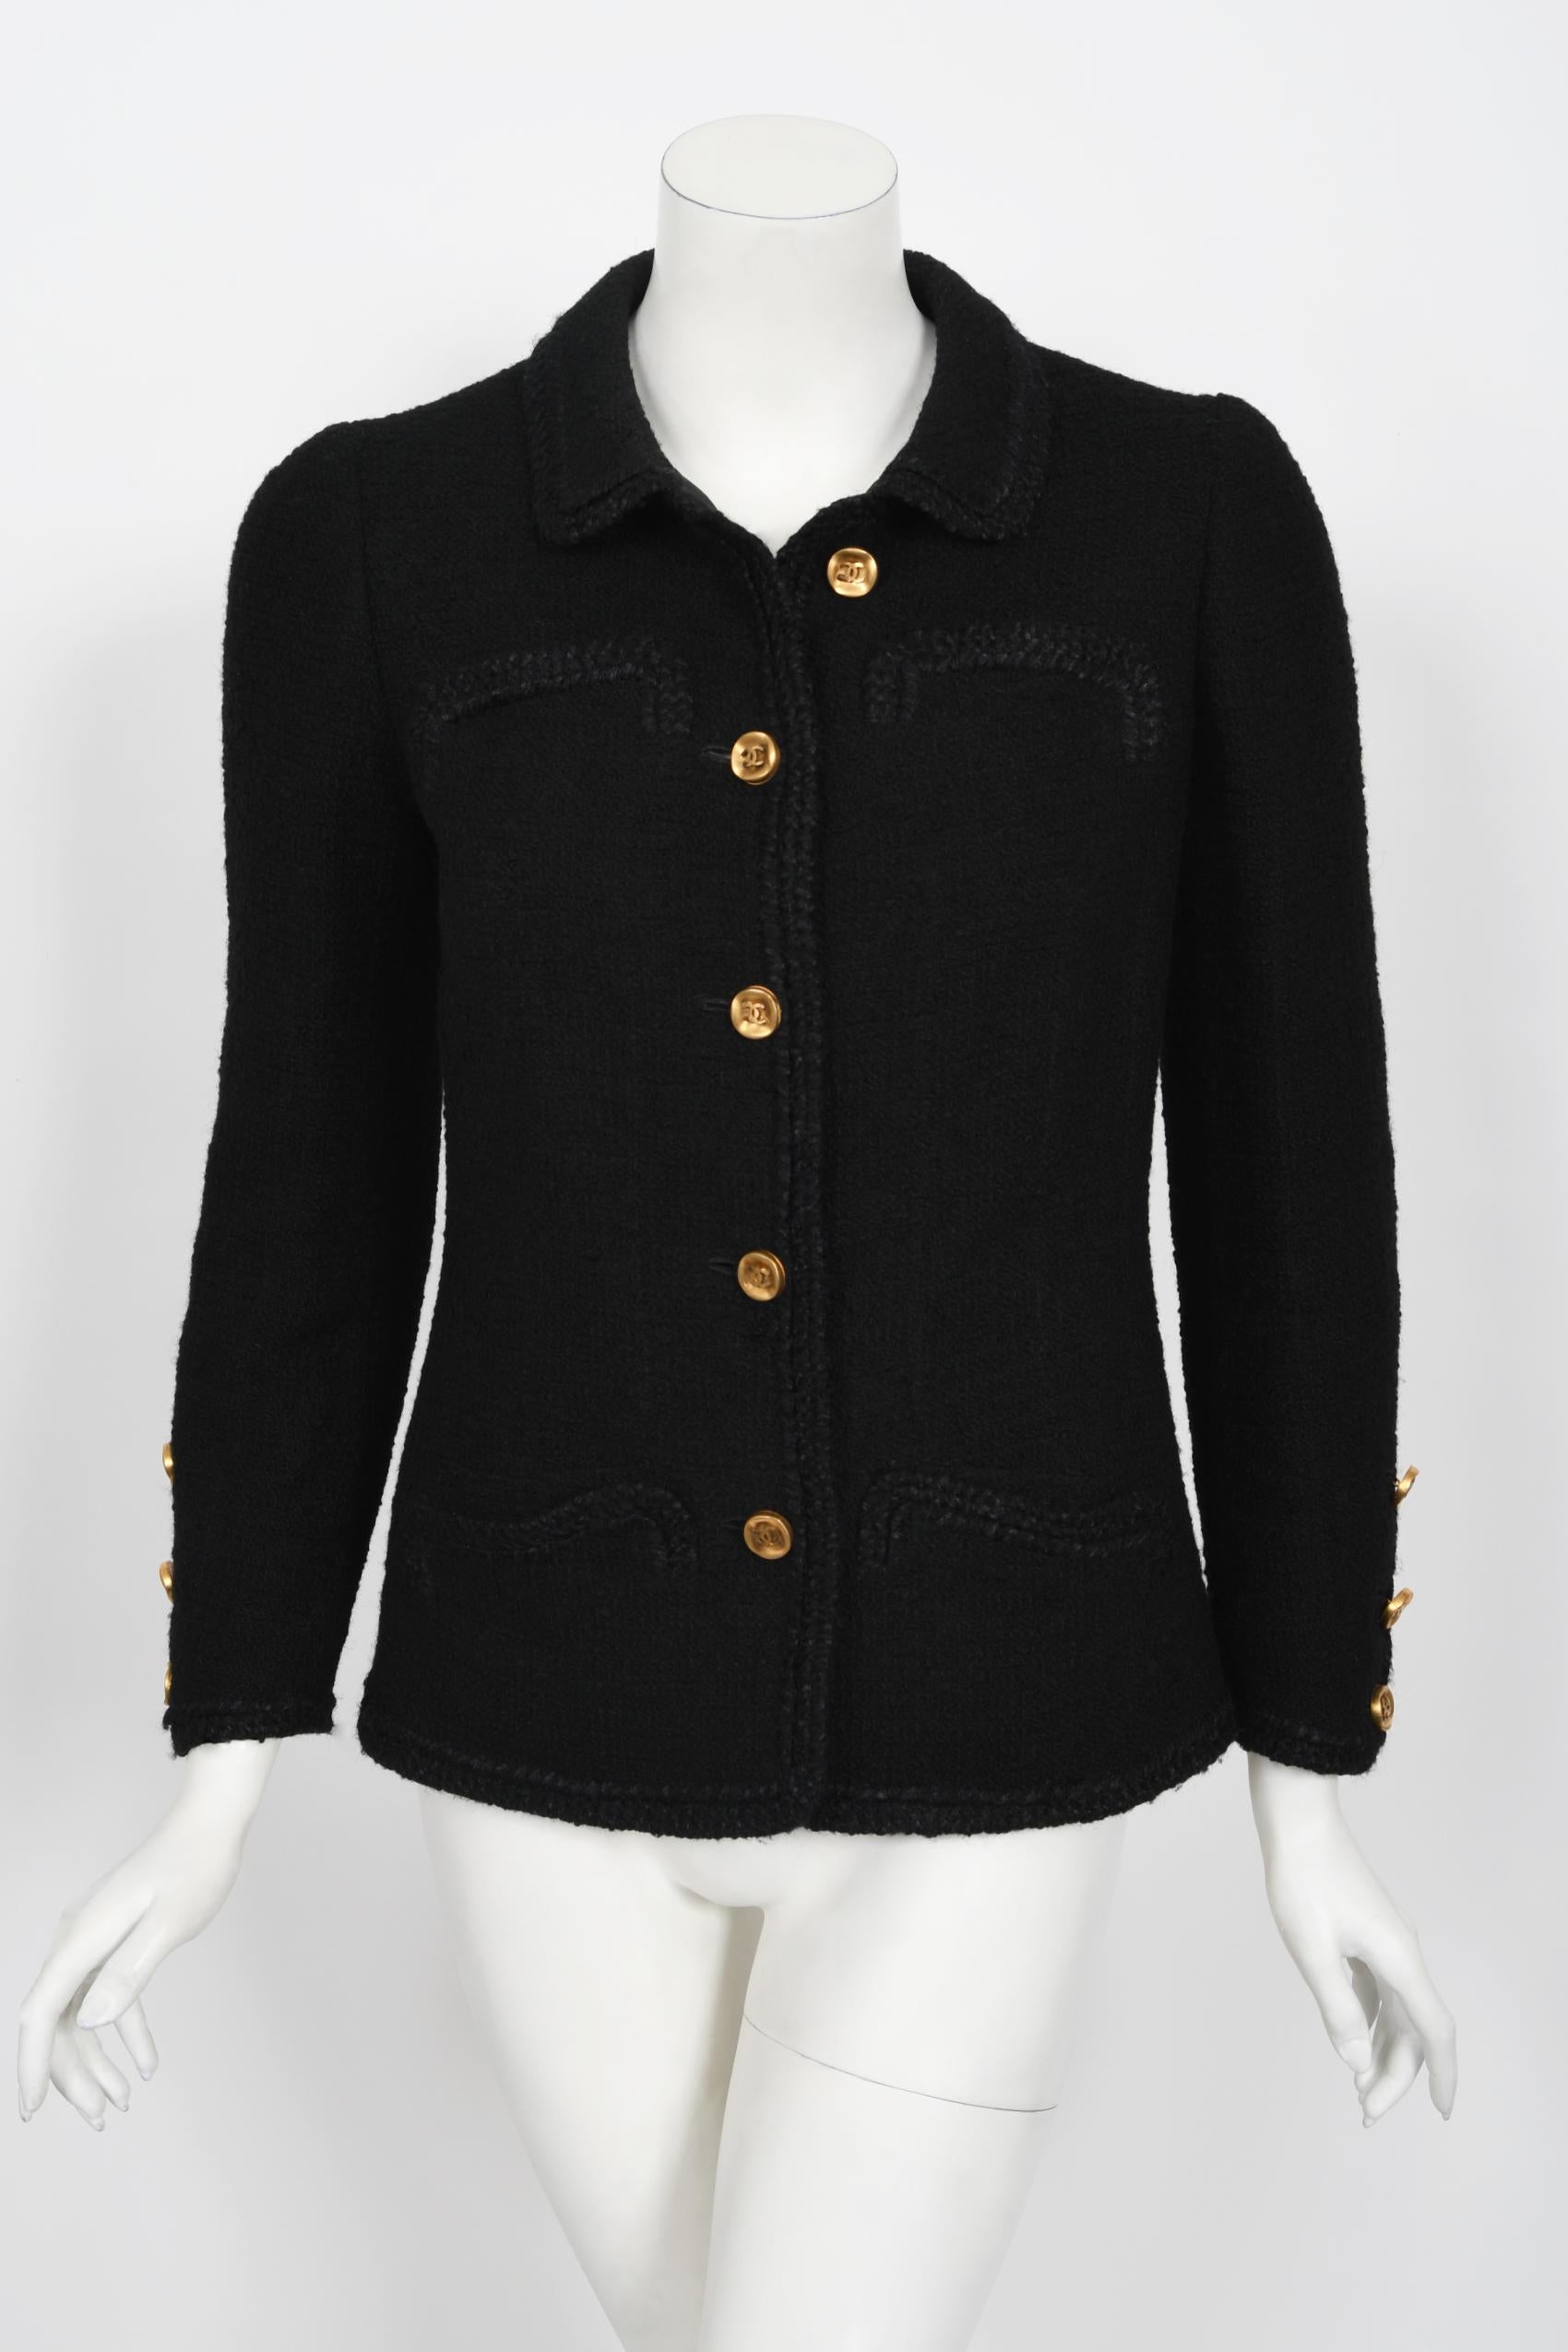 Vintage 1973 Chanel Haute Couture Black Boucle Wool Logo Buttons Jacket Suit  1